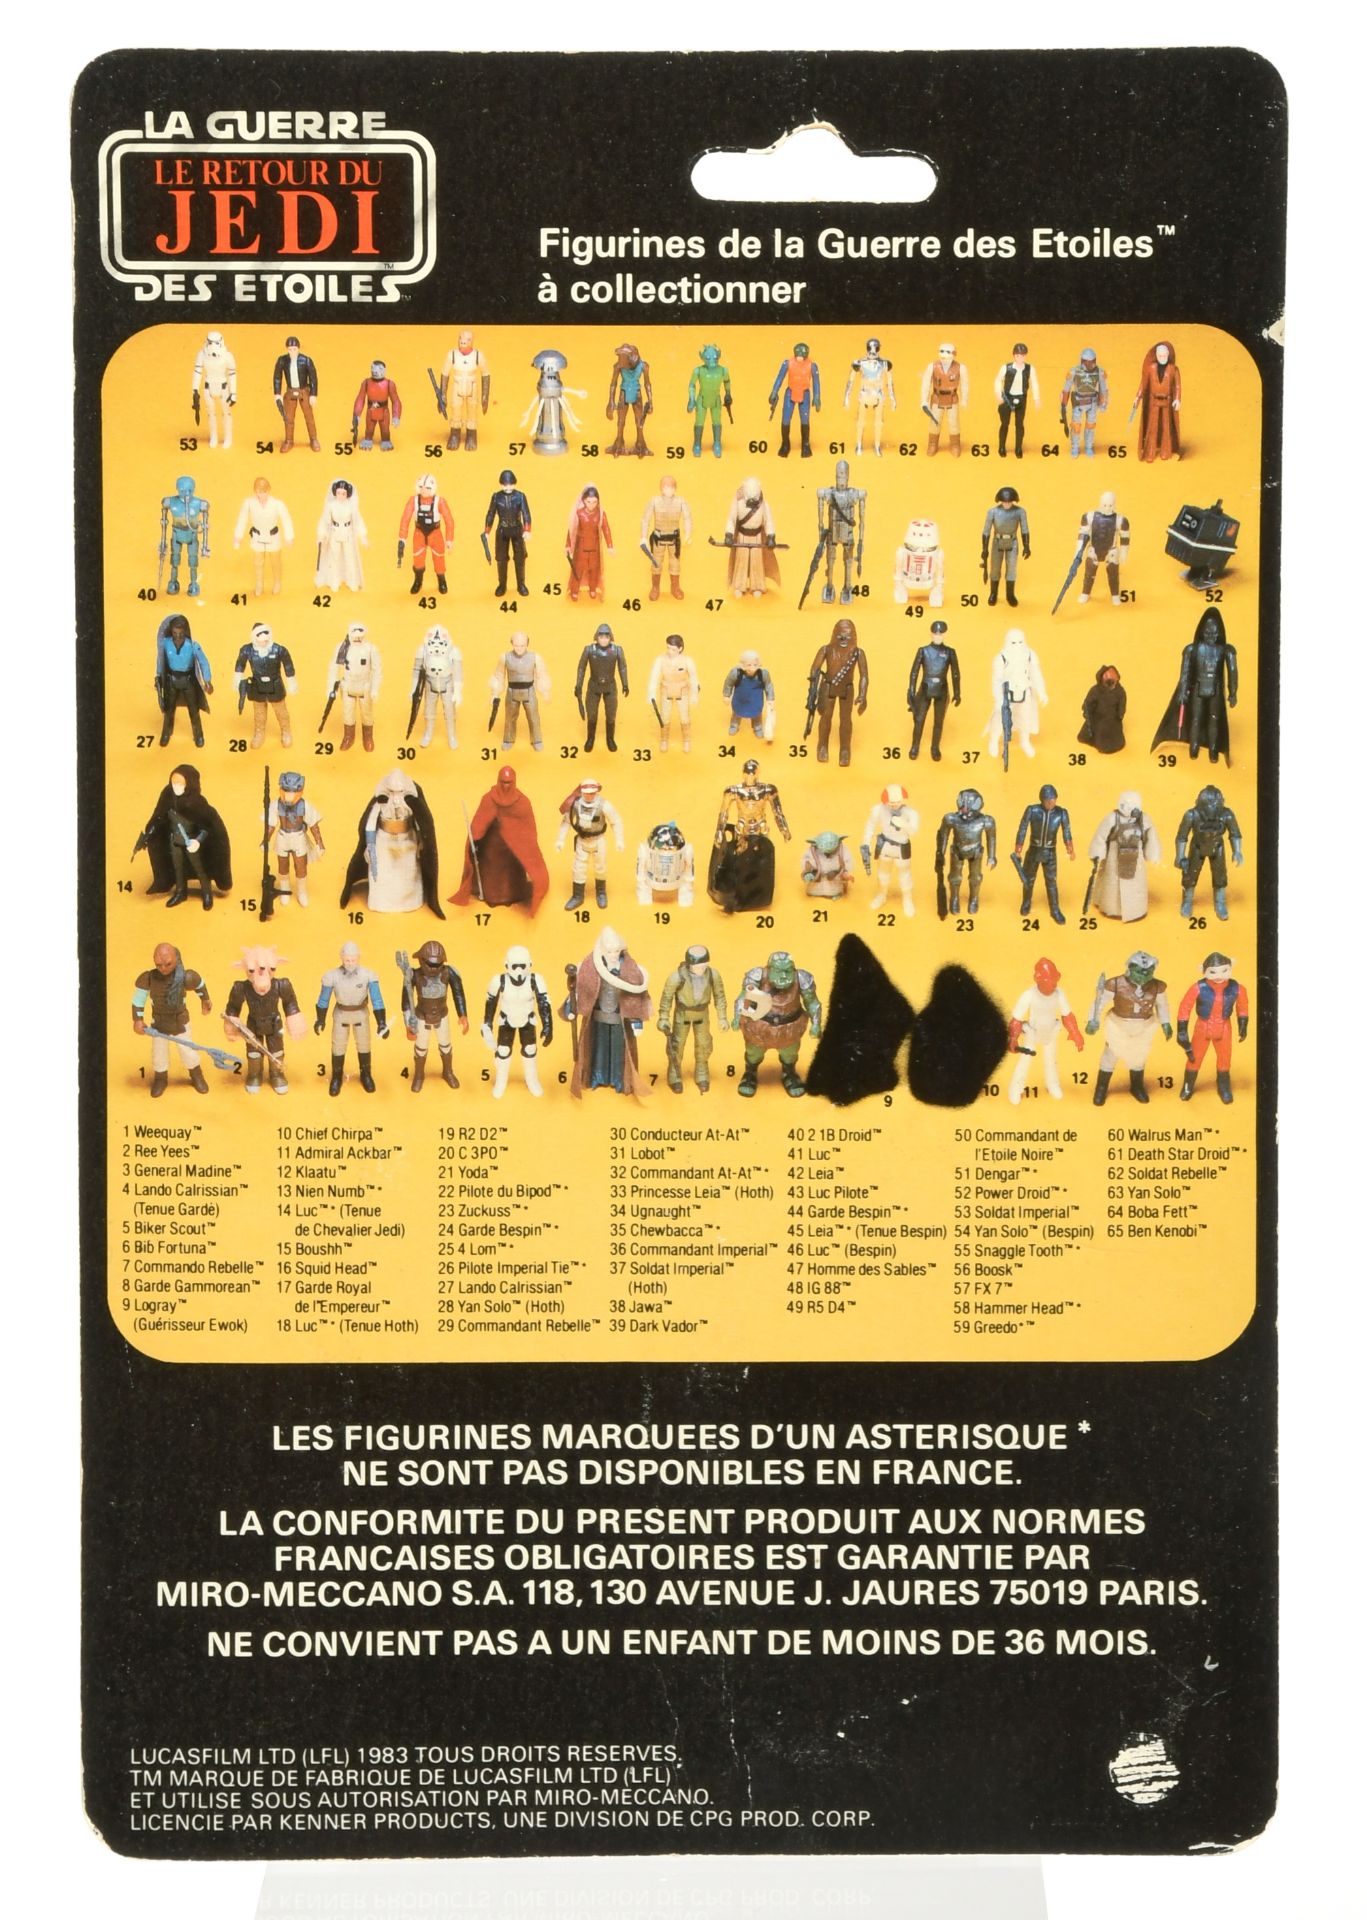 Meccano Star Wars vintage The Return of the Jedi Commando Rebelle 3 3/4" figure - Image 2 of 4